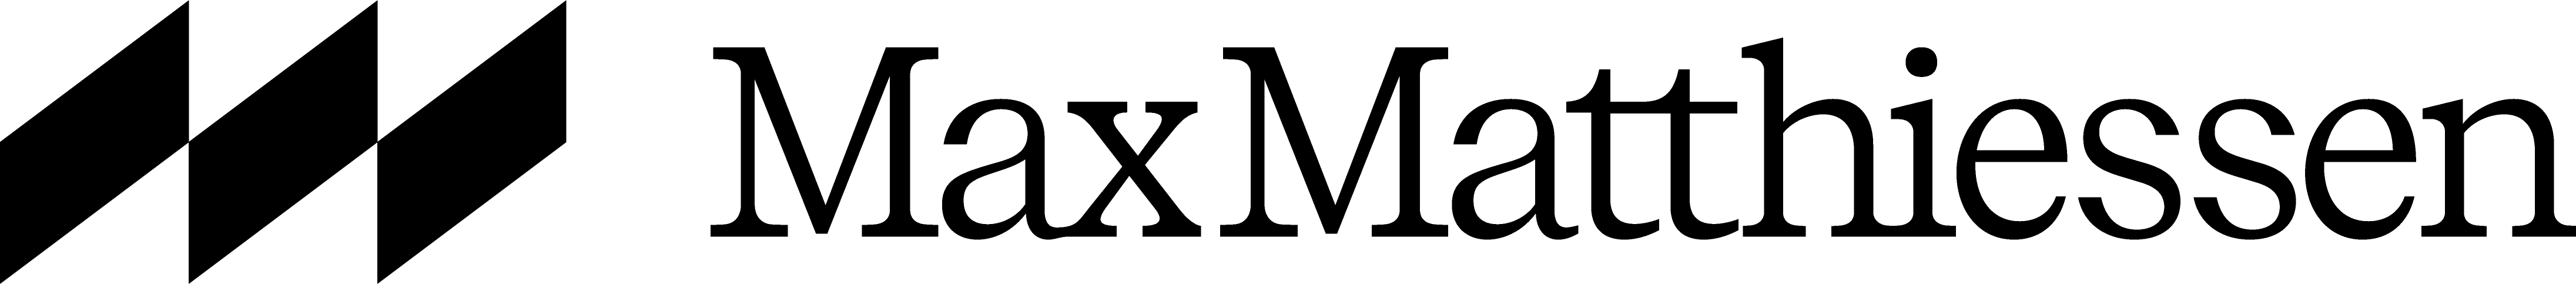 MAXM_Logotype_Horizontal_Black_RGB